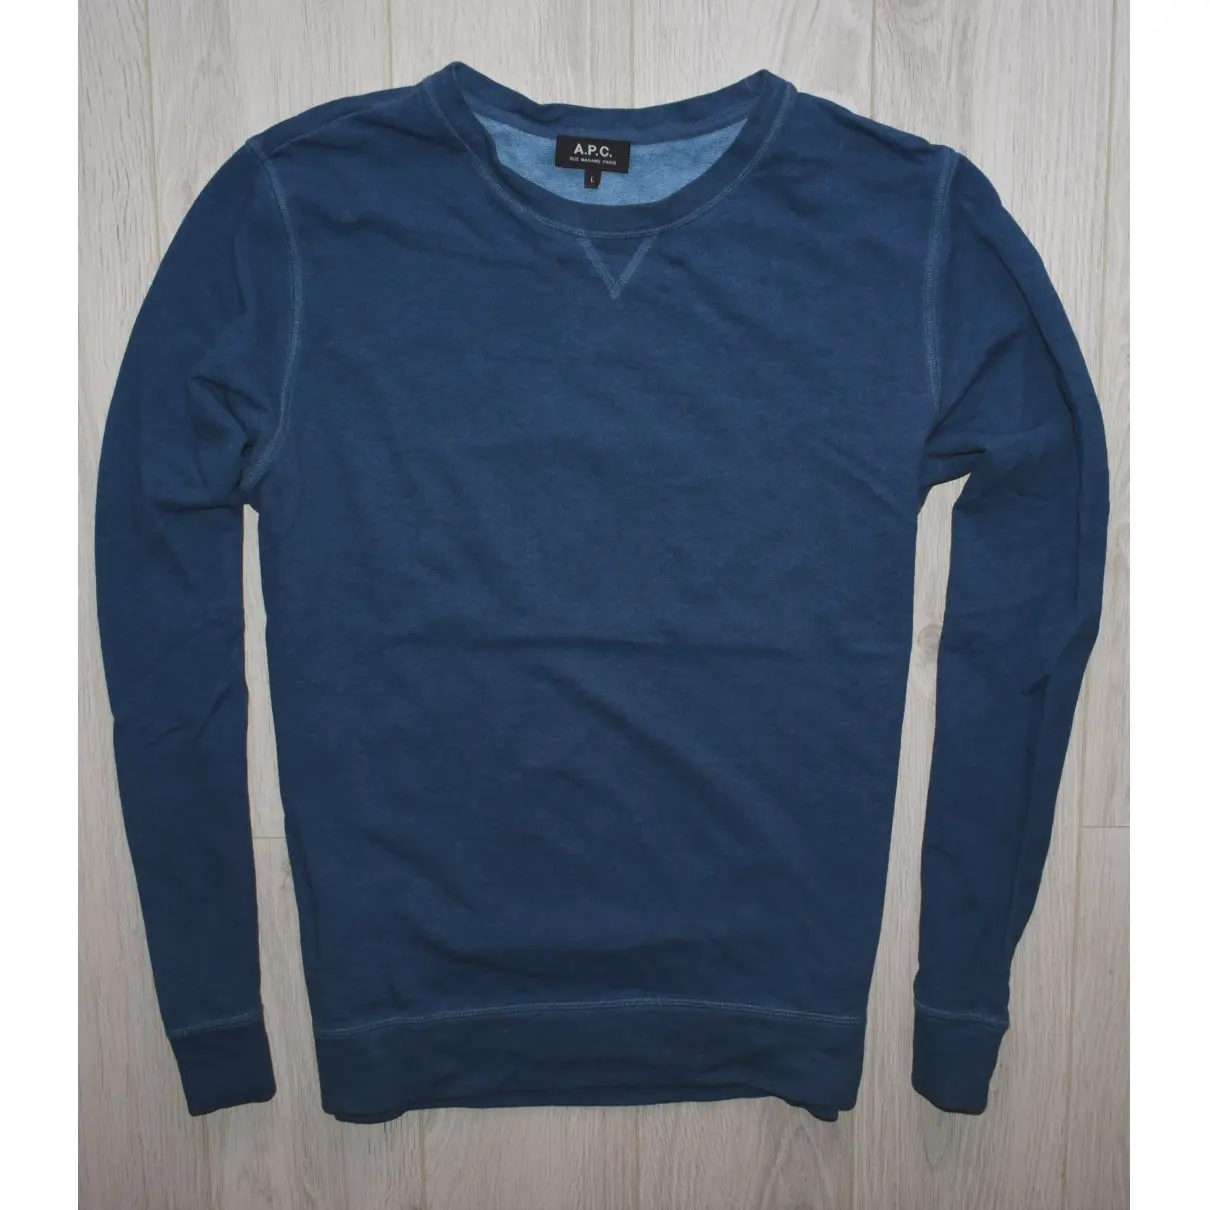 Buy APC Sweatshirt online